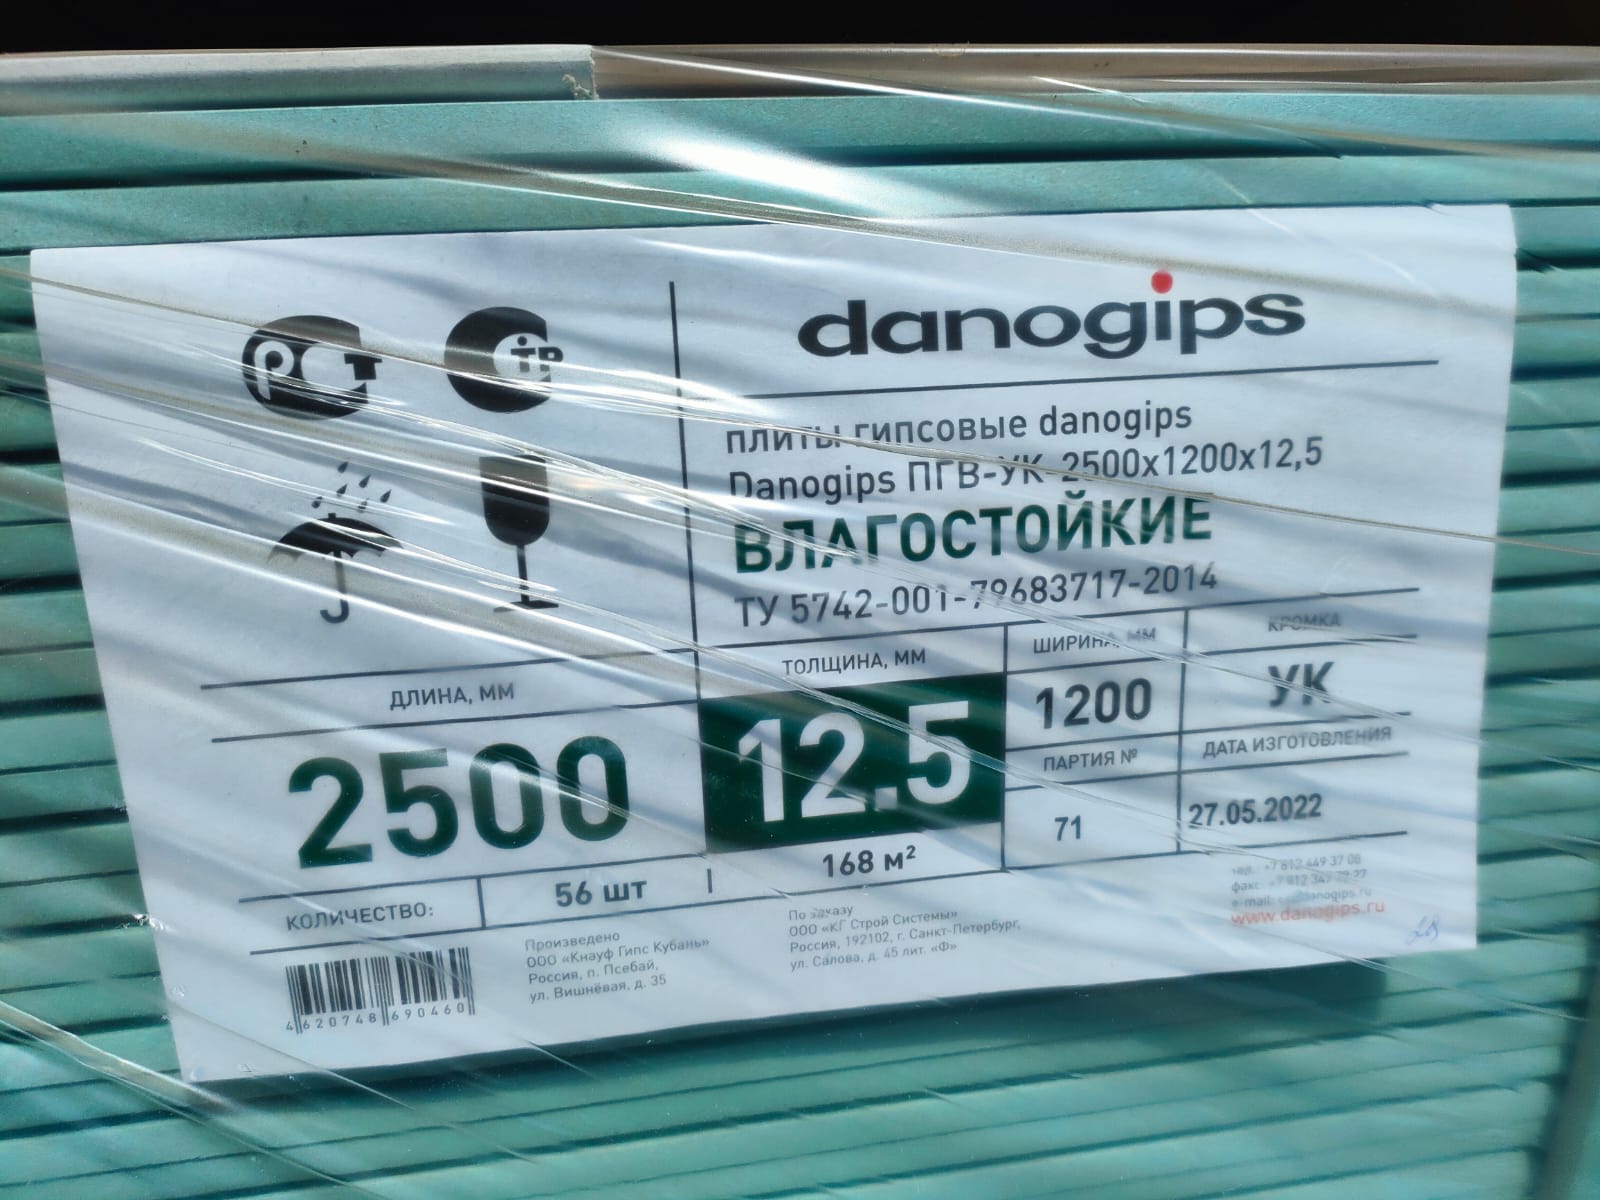 Плита гипсовая влагостойкая Danogips 12,5 мм ПГВ-УК 2500х1200х12,5